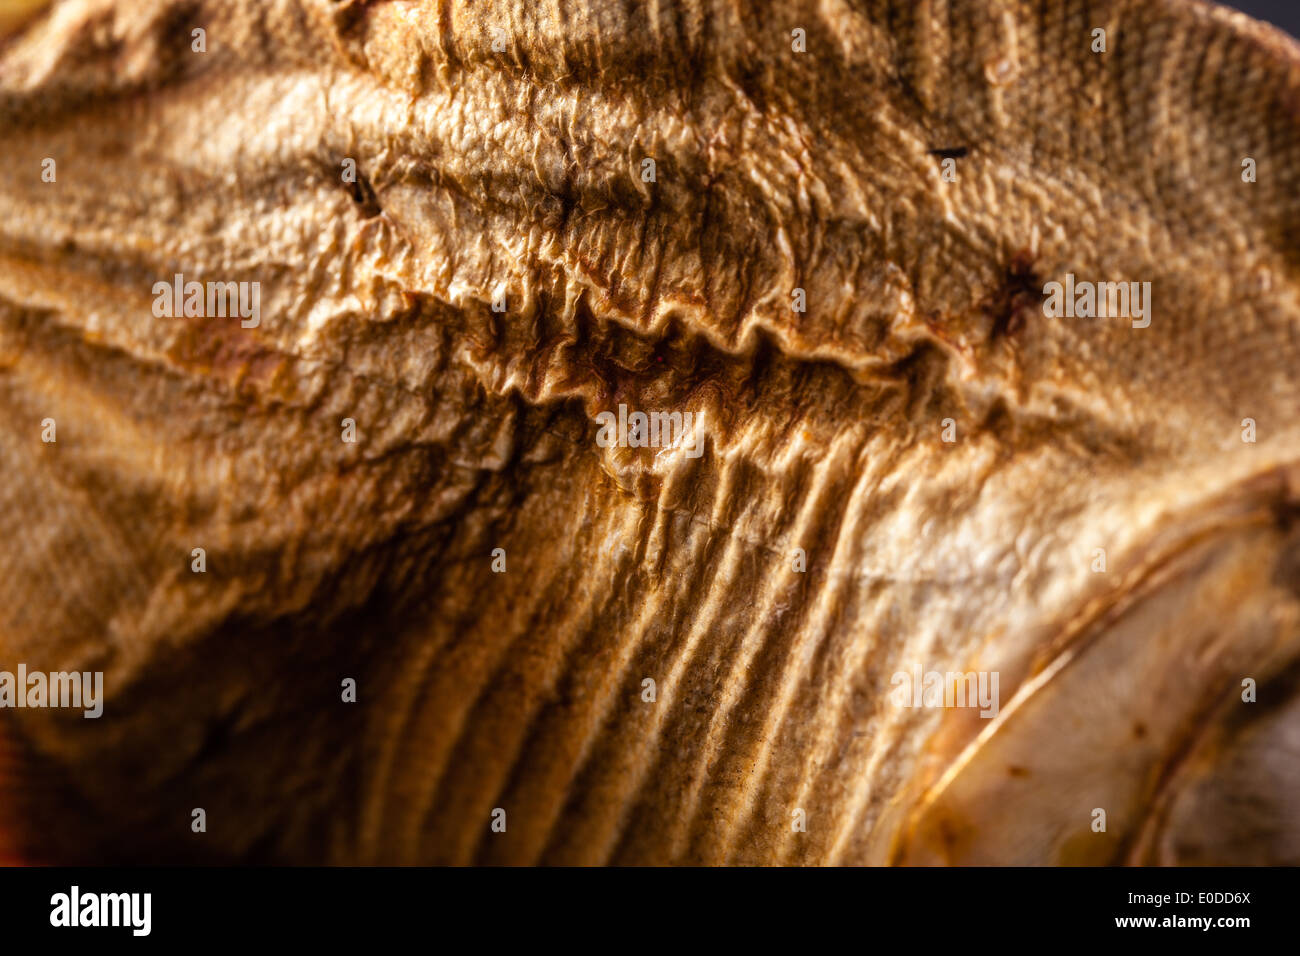 Immagine ravvicinata della pelle rugosa di un pesce essiccati Foto Stock